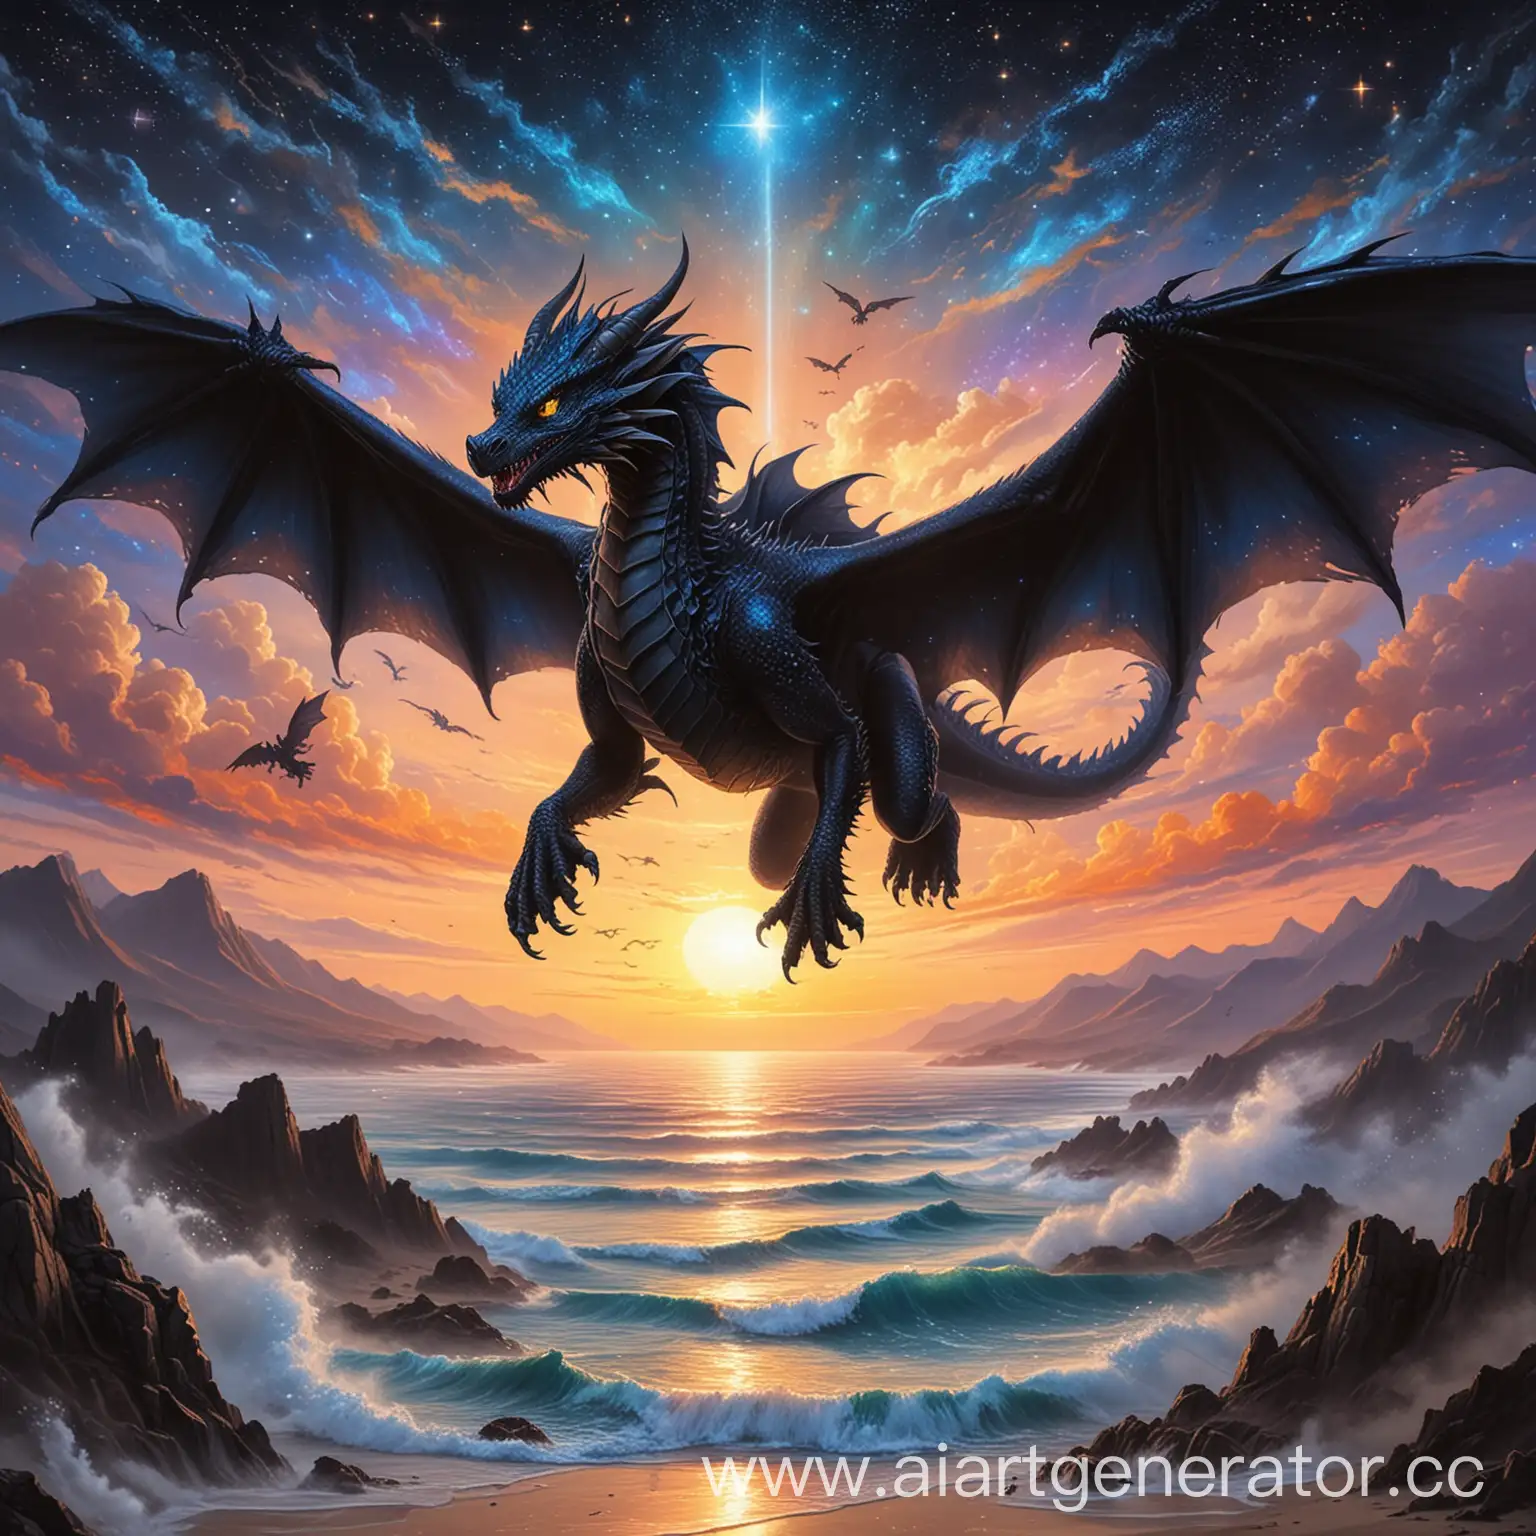 Чёрный дракон с 4 ногами и голубыми глазами летит в закат, под крыльями у него звёздное небо
